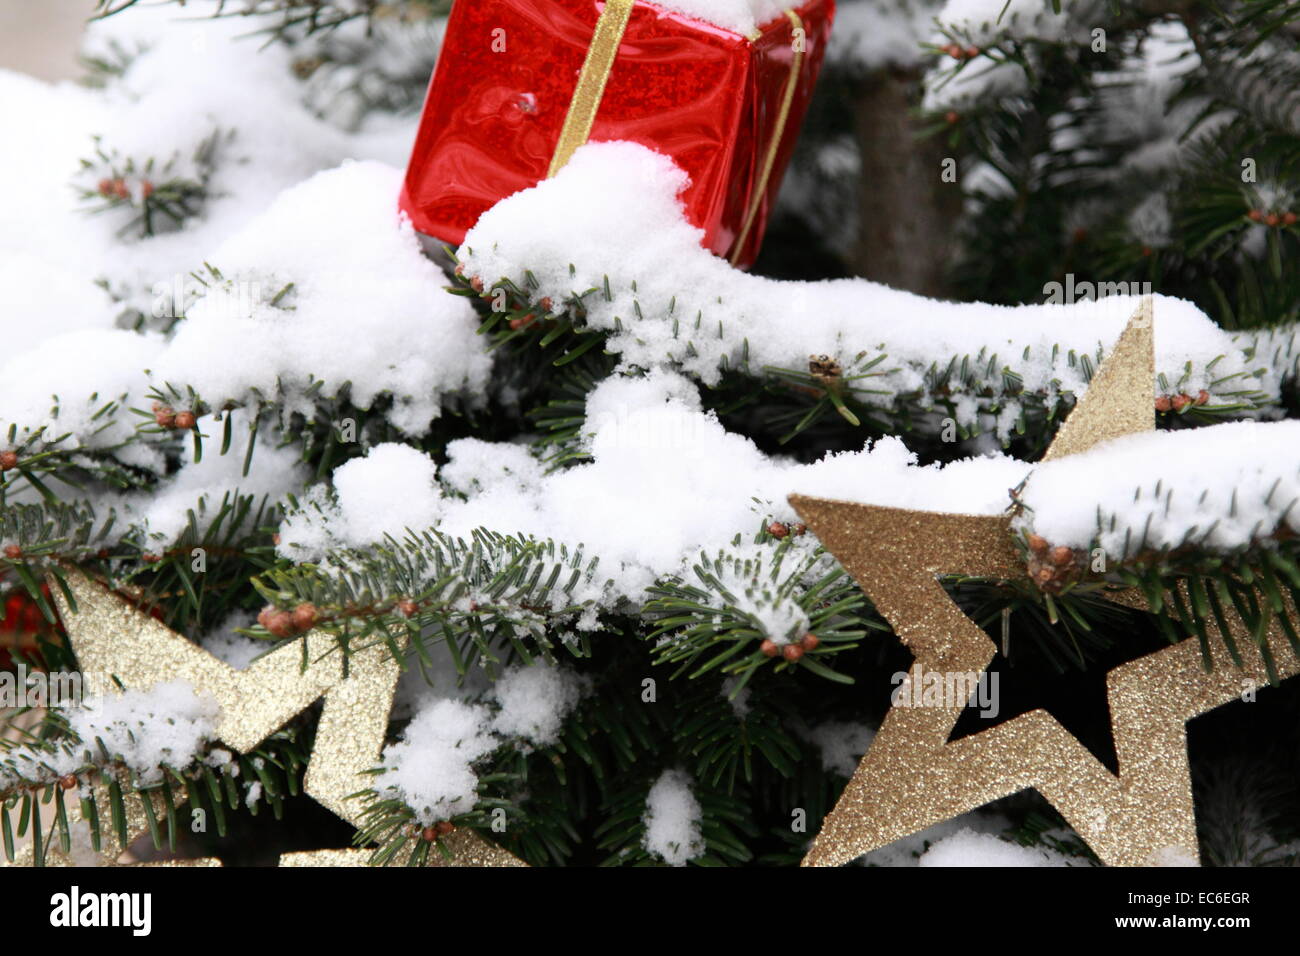 Adornos del árbol de navidad en la nieve Foto de stock